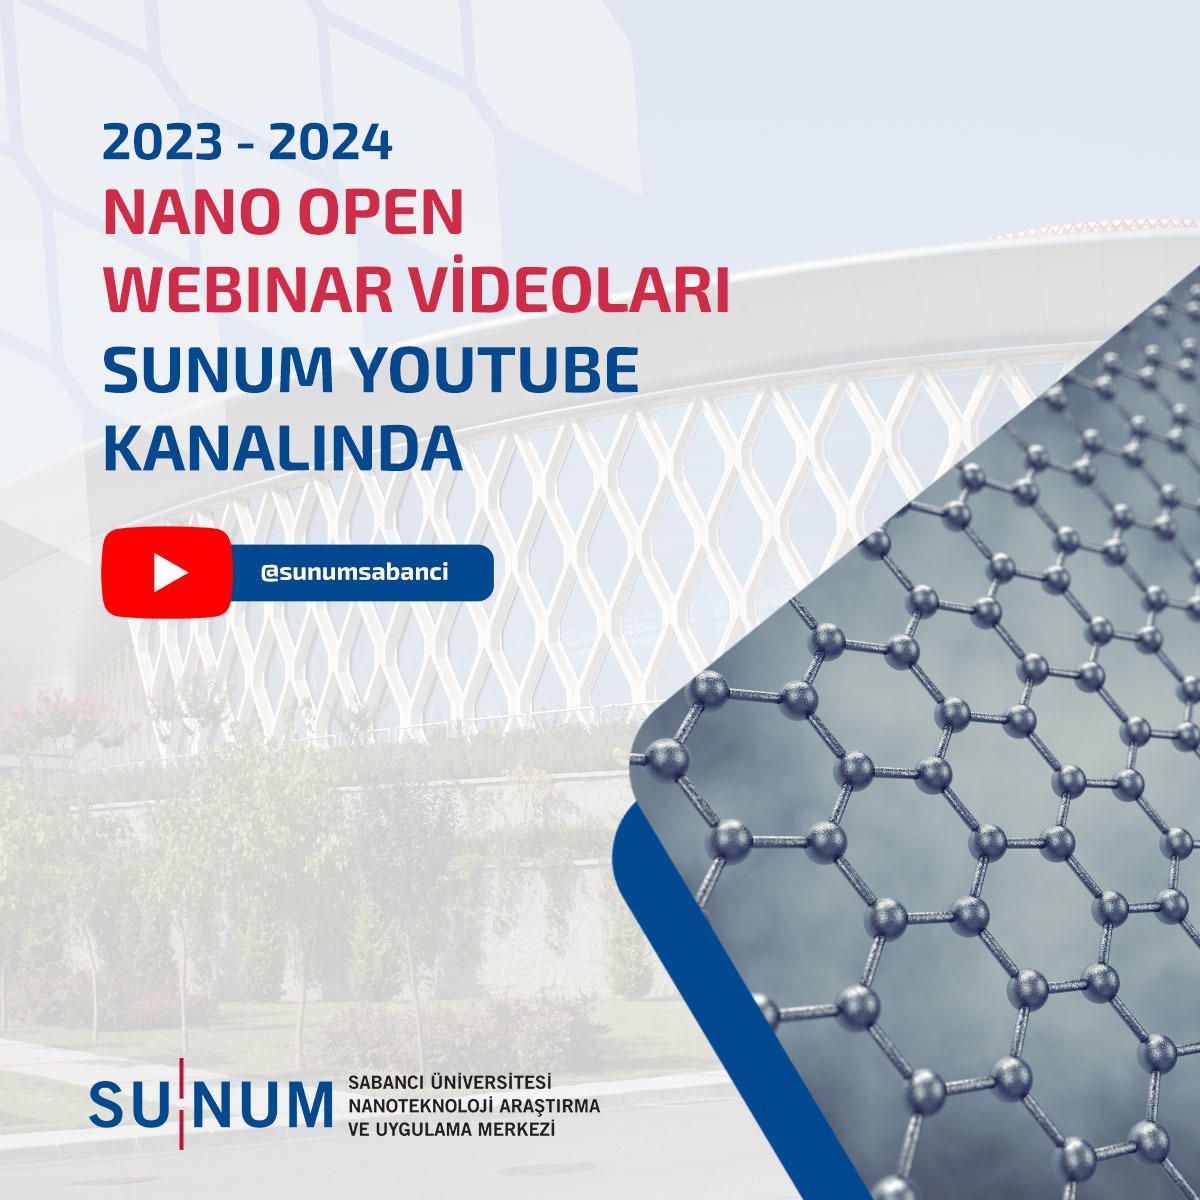 2023-2024 Nano Open Webinar Videoları SUNUM YouTube Kanalında Yayında